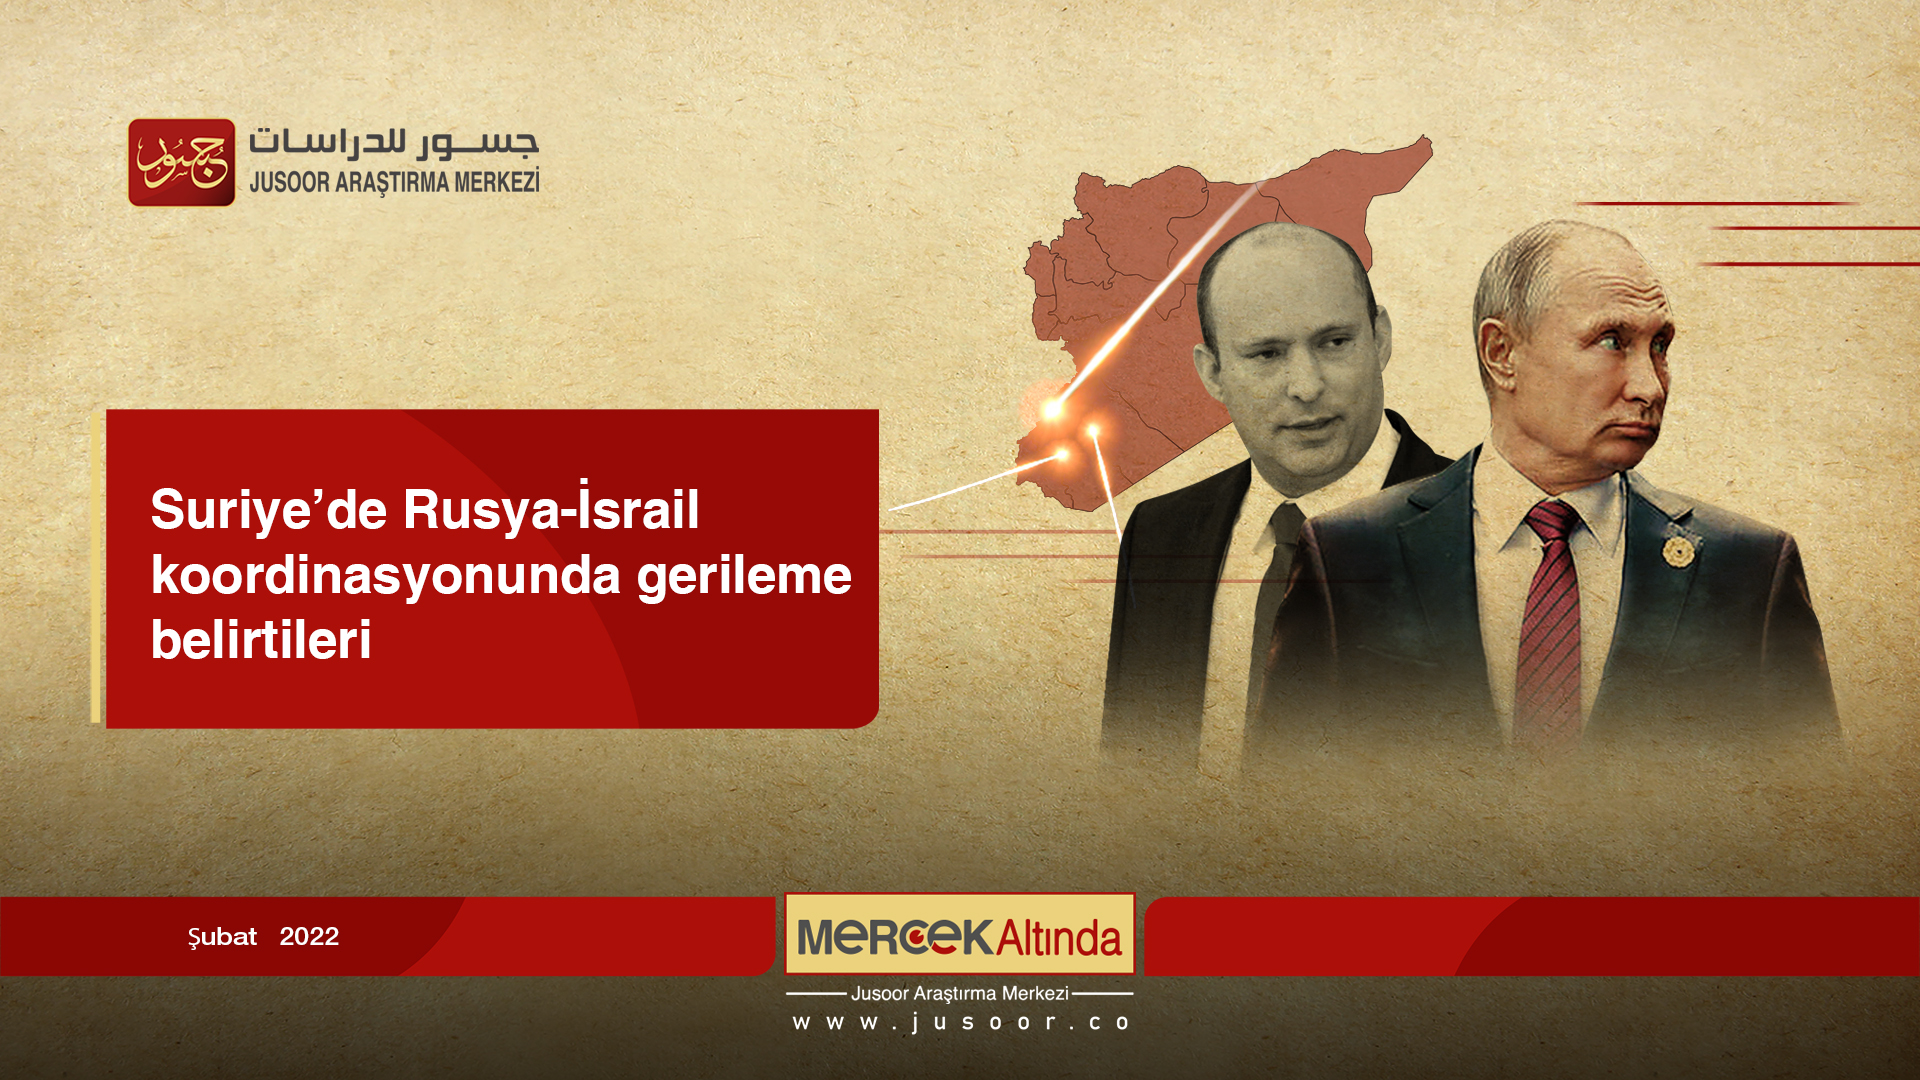 Suriye’de Rusya-İsrail koordinasyonunda gerileme belirtileri